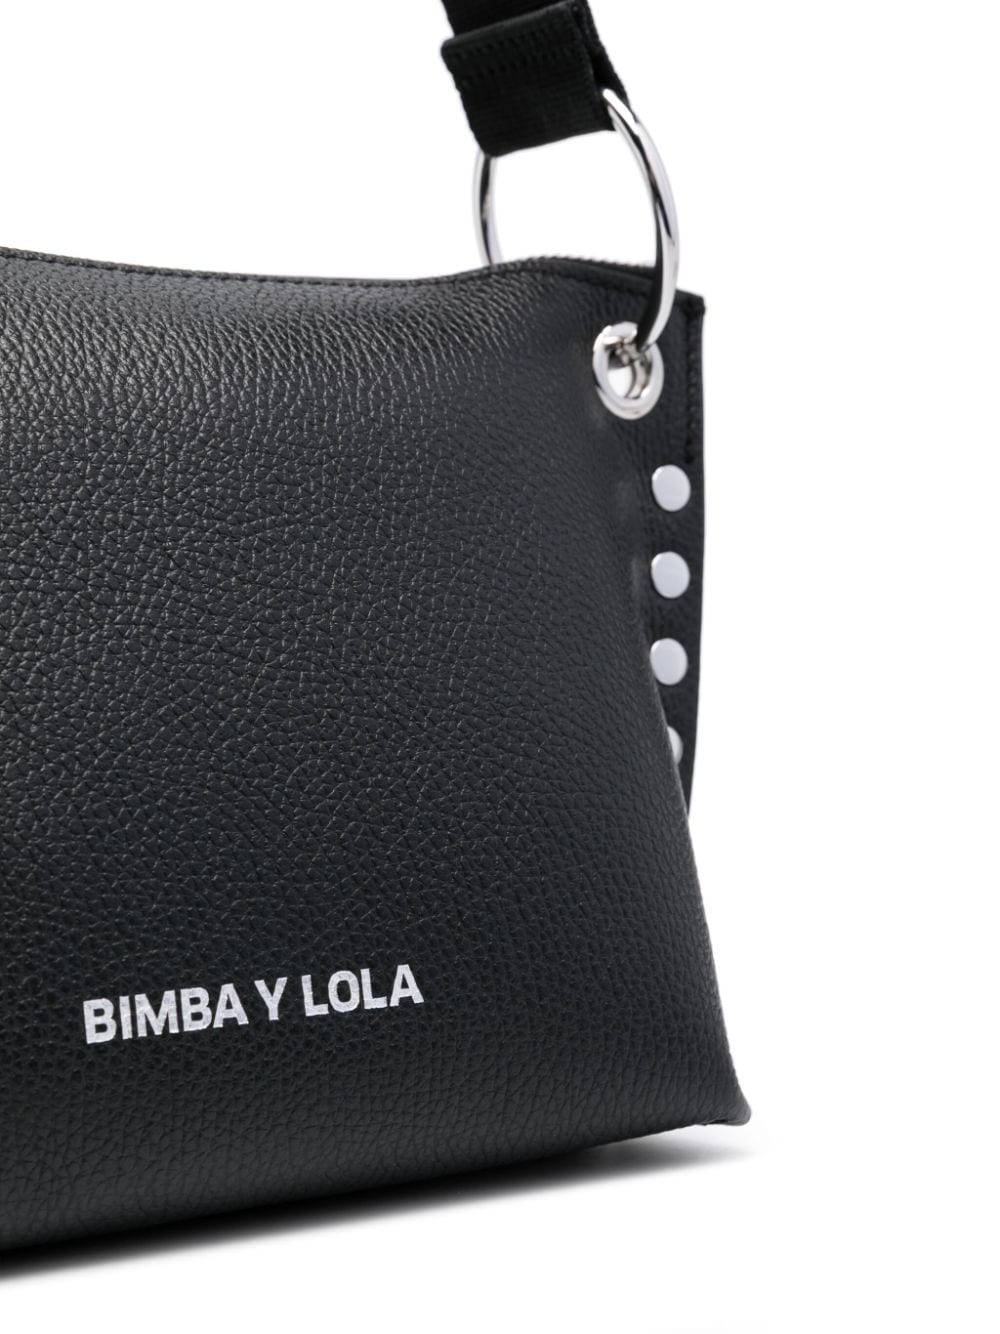 Bimba Y Lola Women Large Size Clutch Wallet Purse Black